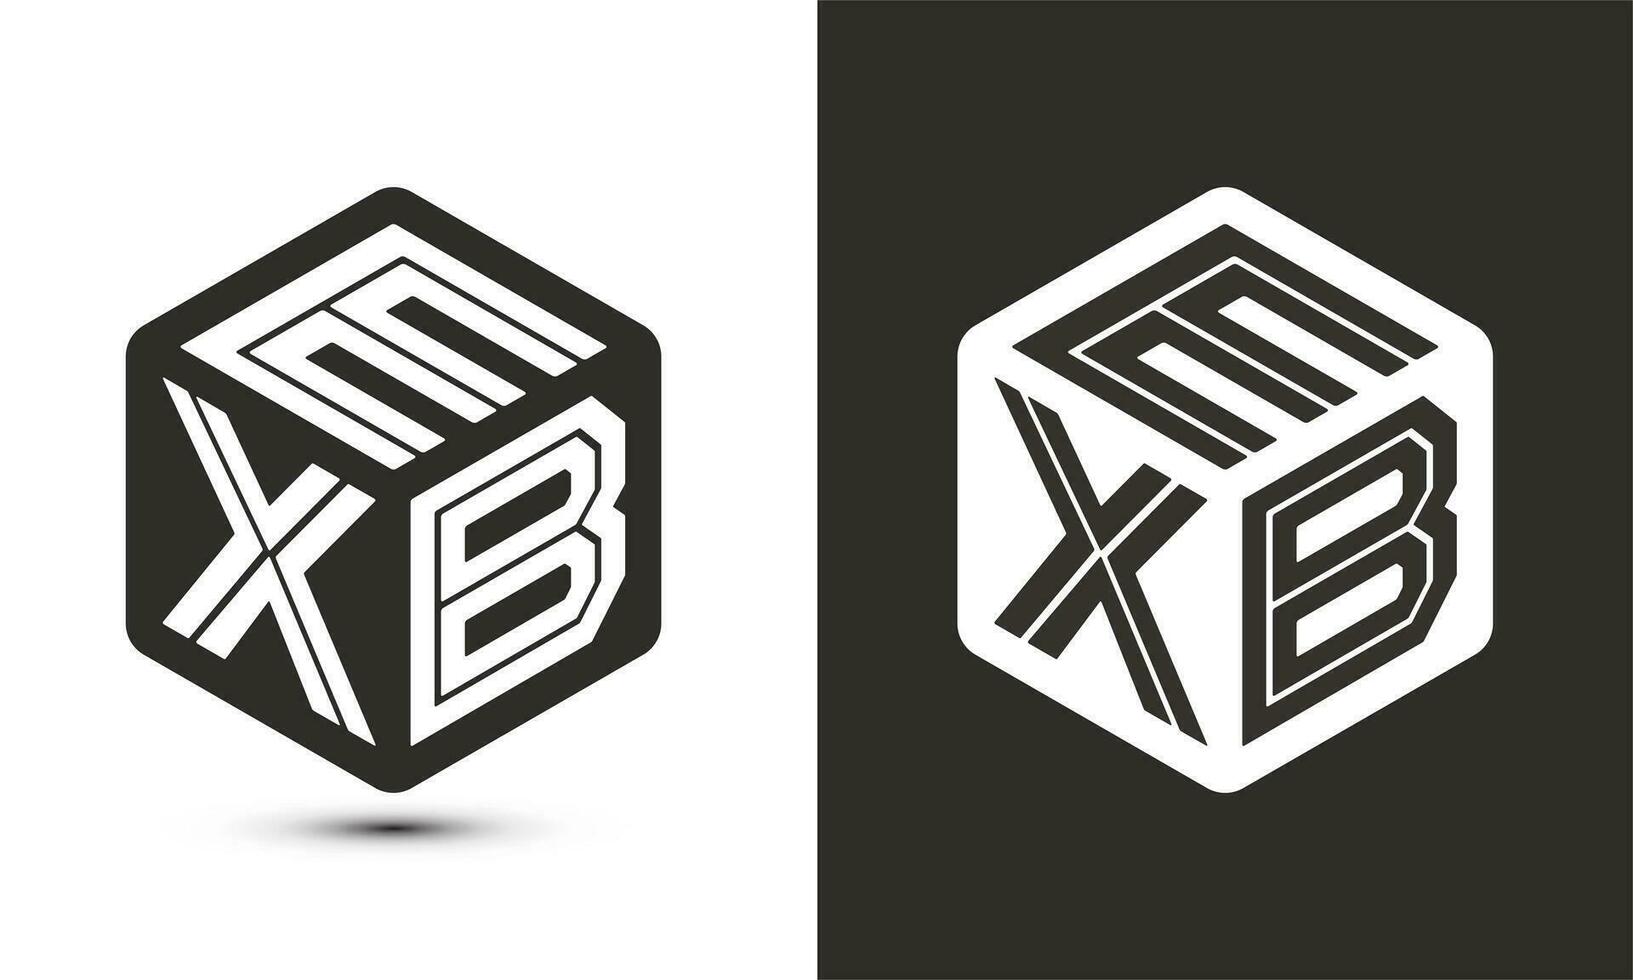 exb brief logo ontwerp met illustrator kubus logo, vector logo modern alfabet doopvont overlappen stijl.